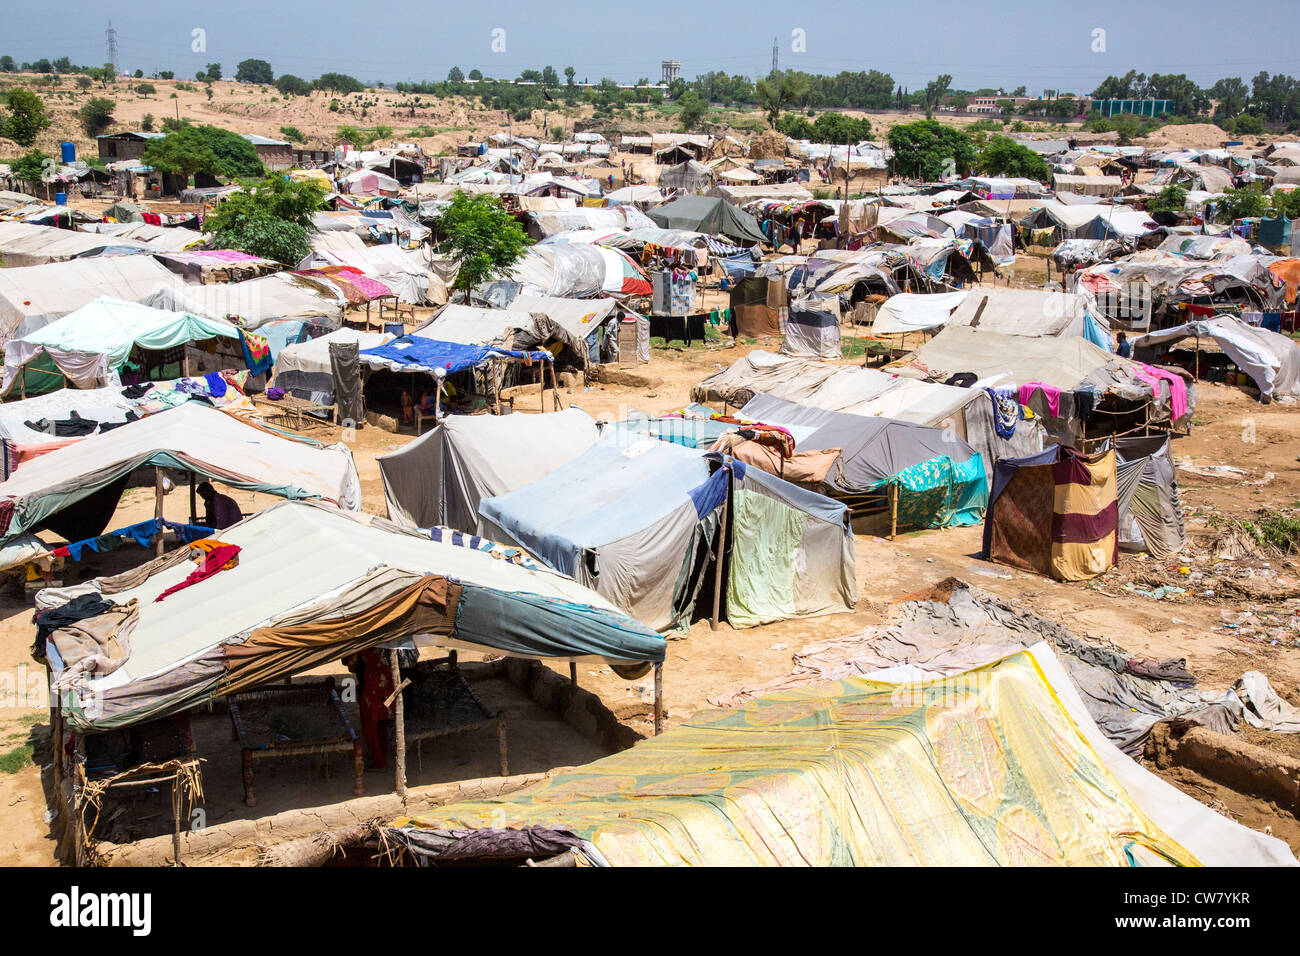 Tent village in Islamabad, Pakistan Stock Photo